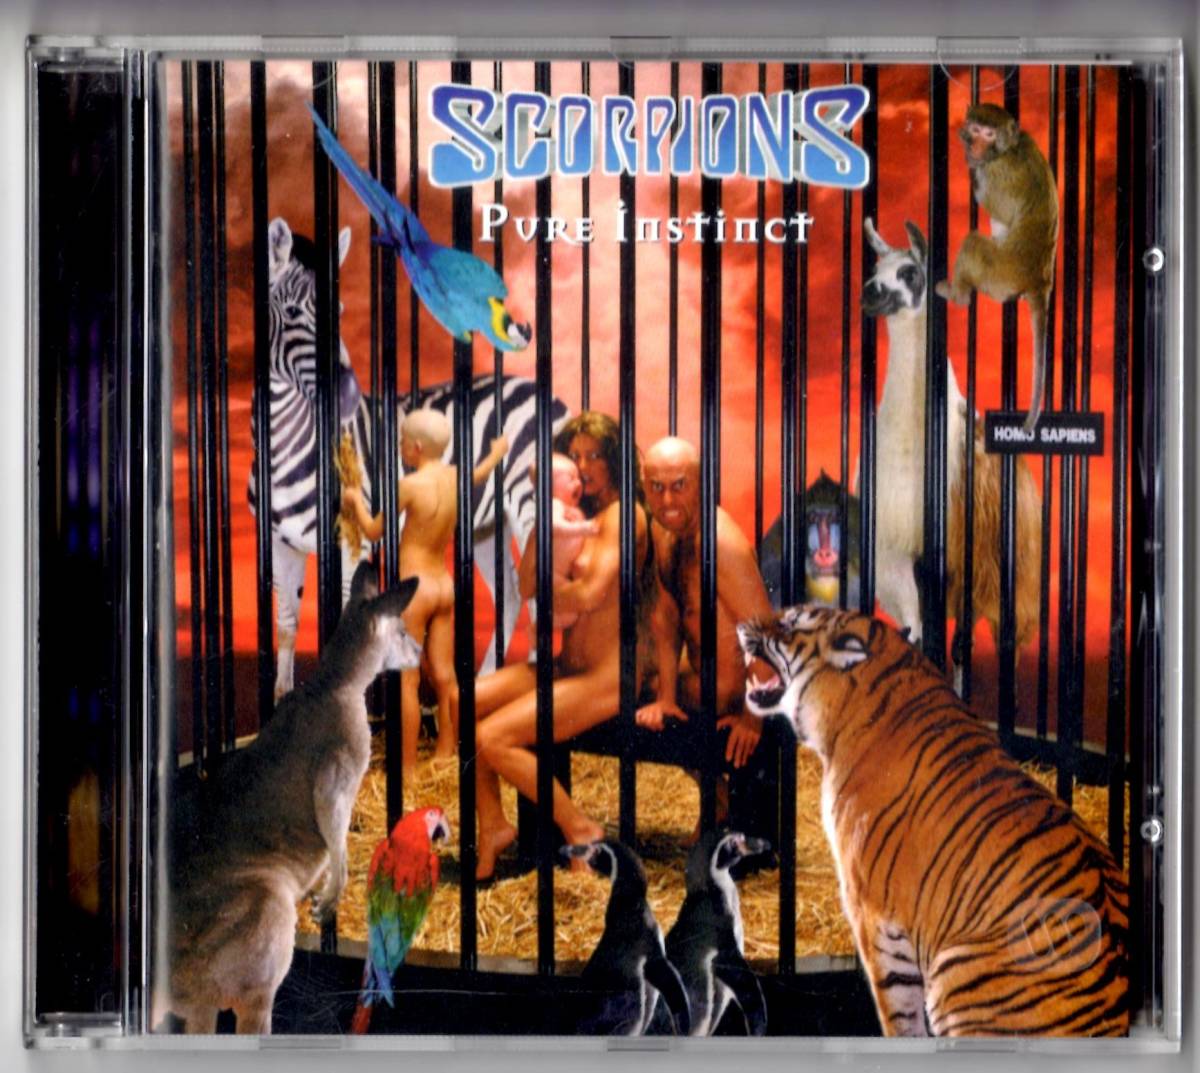 Used CD 輸入盤 スコーピオンズ Scorpions『ピュア・インスティンクト〜蠍の本能』- Pure Instinct(1996年発表)全11曲EU盤